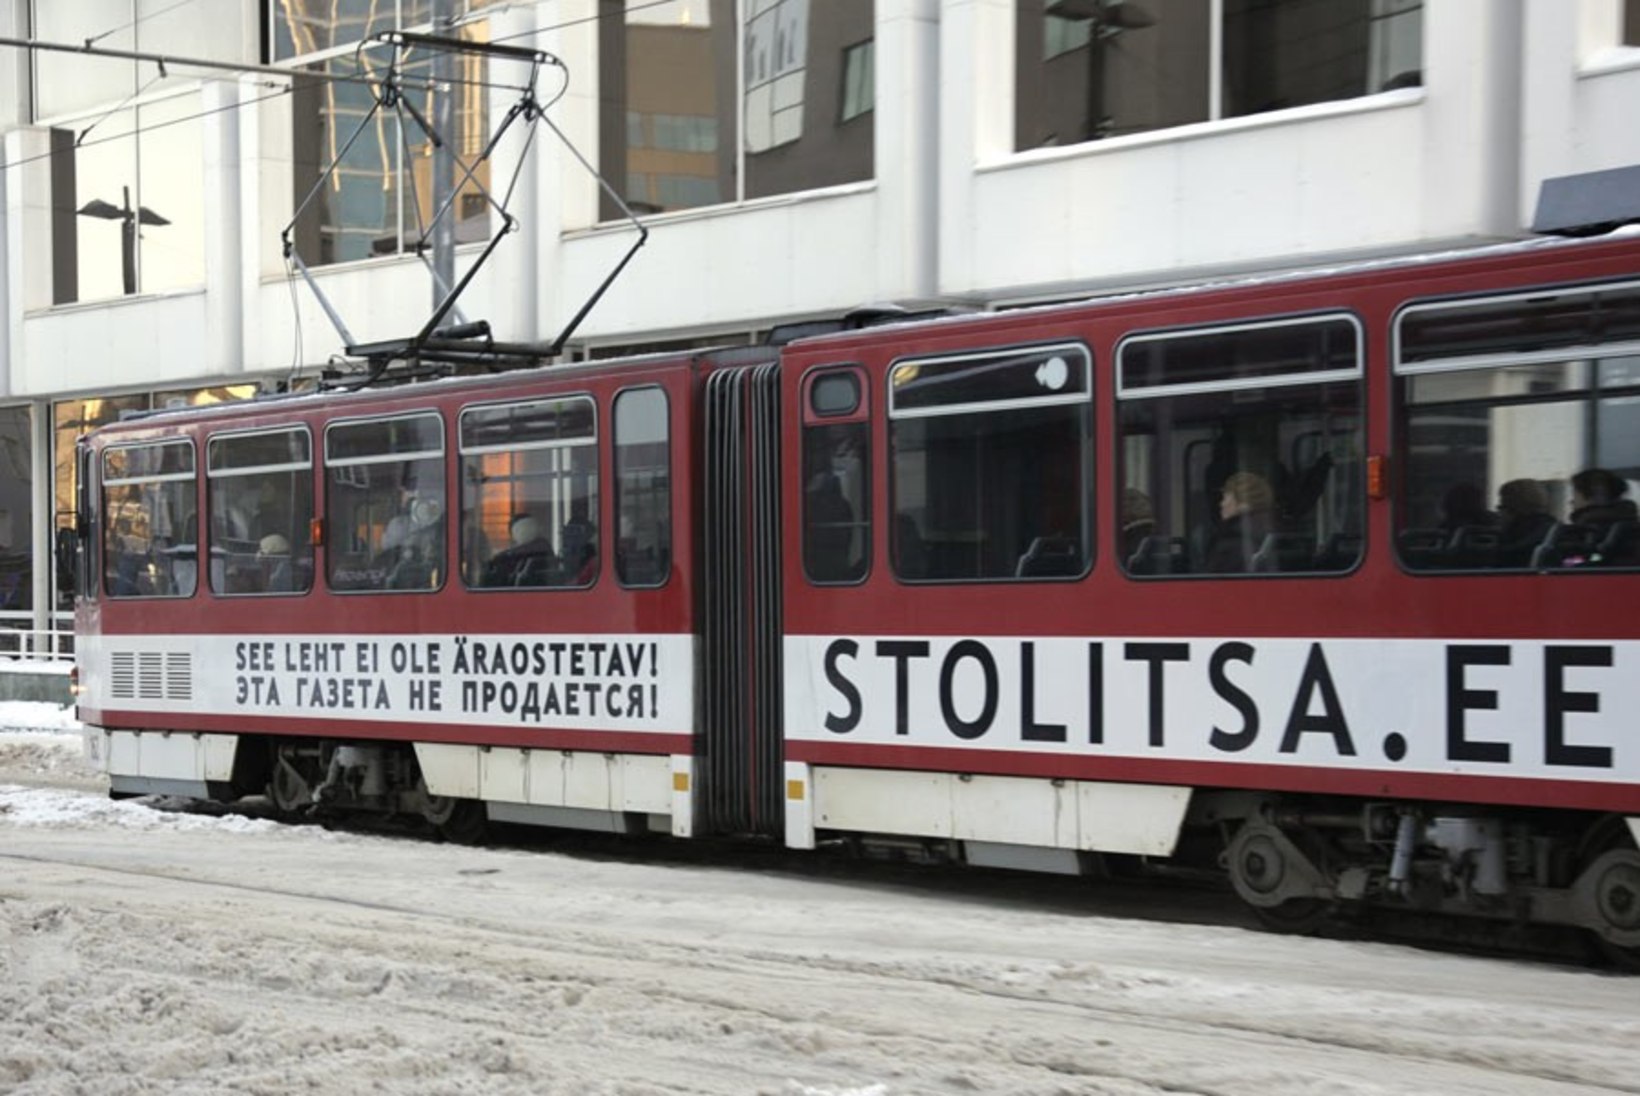 IRL: Tallinn peab Pealinna ja Stolitsa kulud Keskerakonnalt tagasi nõudma